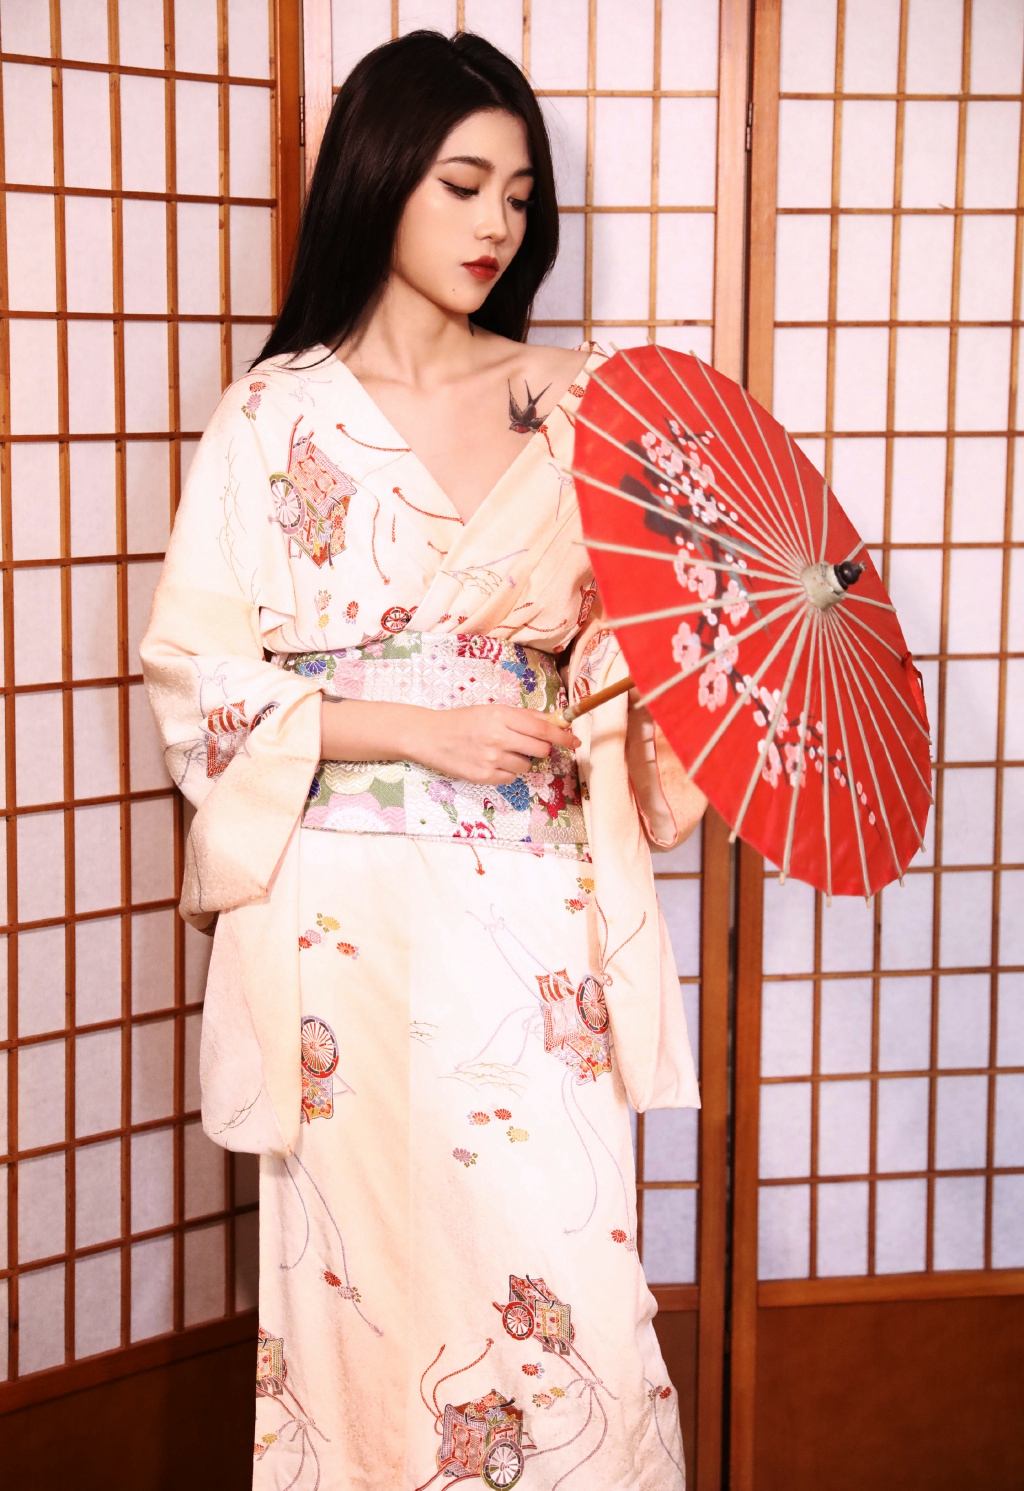 性感美女御姐日本和服妩媚诱惑私人摄影  第2张